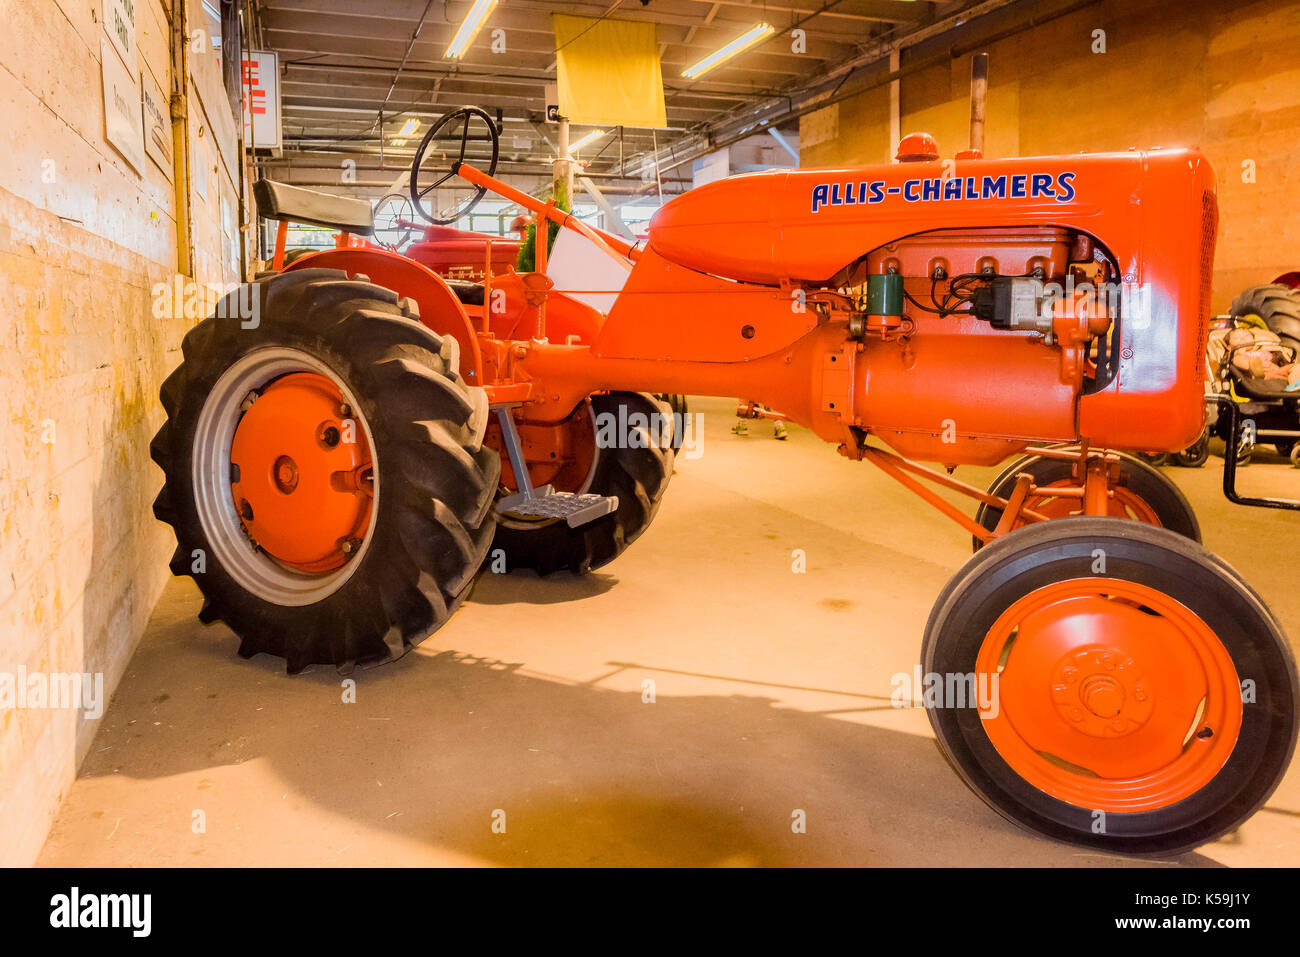 Alllis Chalmers tractor en Feria Agropecuaria Foto de stock